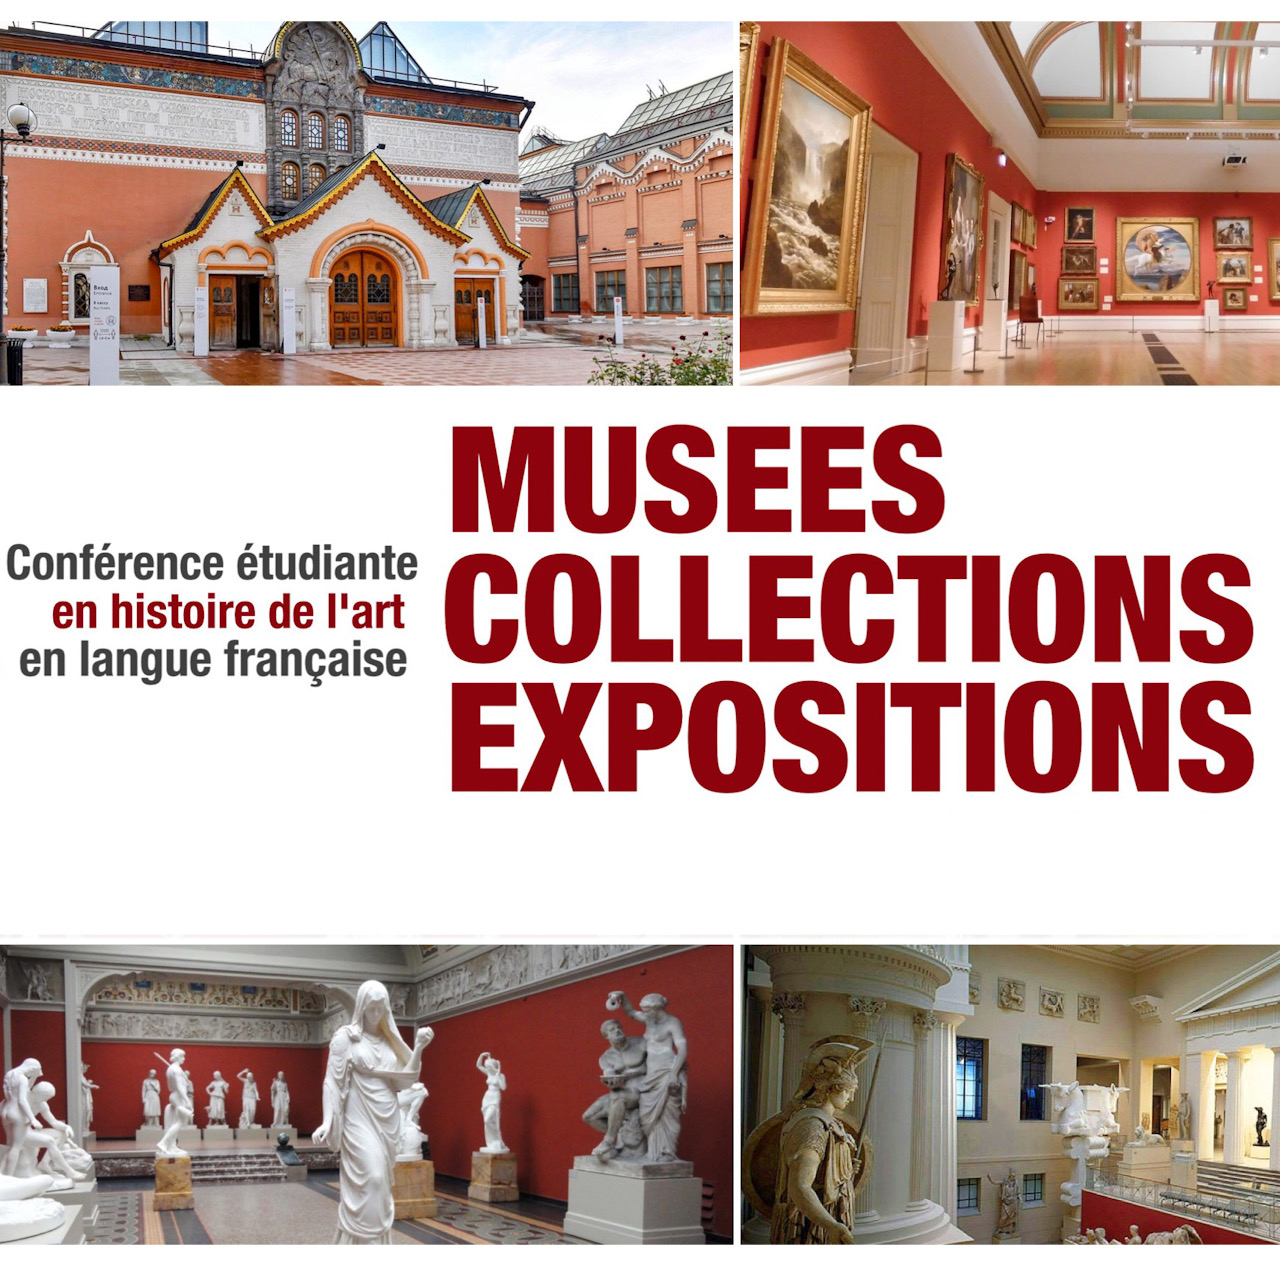 Студенческая конференция на французском языке "Musées. Collections. Expositions" [Музеи. Коллекции. Выставки]